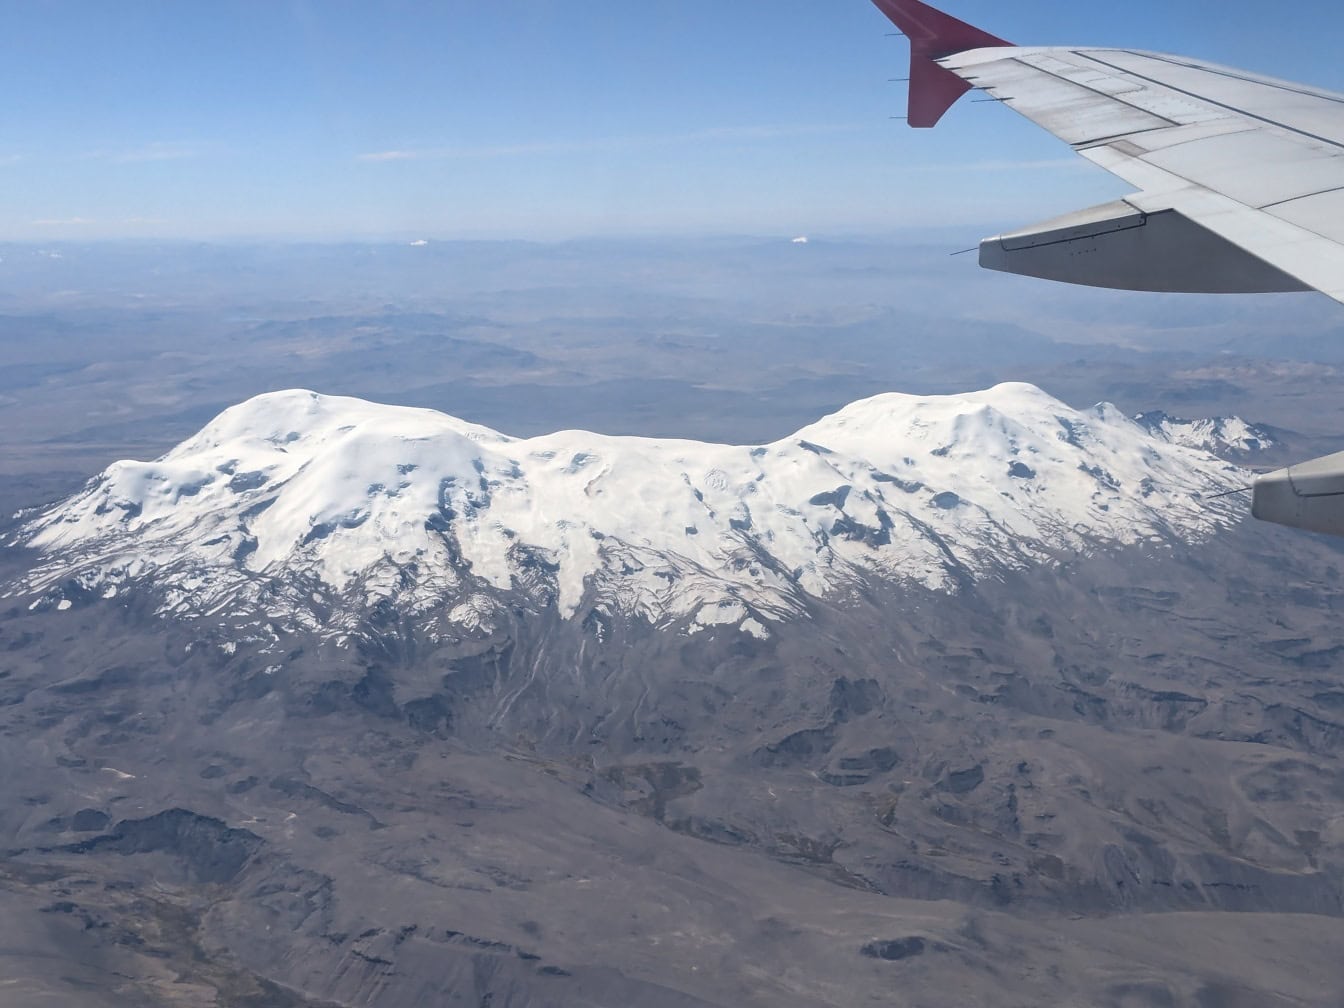 Μια φωτογραφία που τραβήχτηκε από ένα αεροπλάνο με το φτερό του αεροπλάνου σε πρώτο πλάνο και το χιονισμένο ηφαίστειο Coropuna που βρίσκεται στα βουνά των Άνδεων του νοτιοανατολικού-κεντρικού Περού στο παρασκήνιο